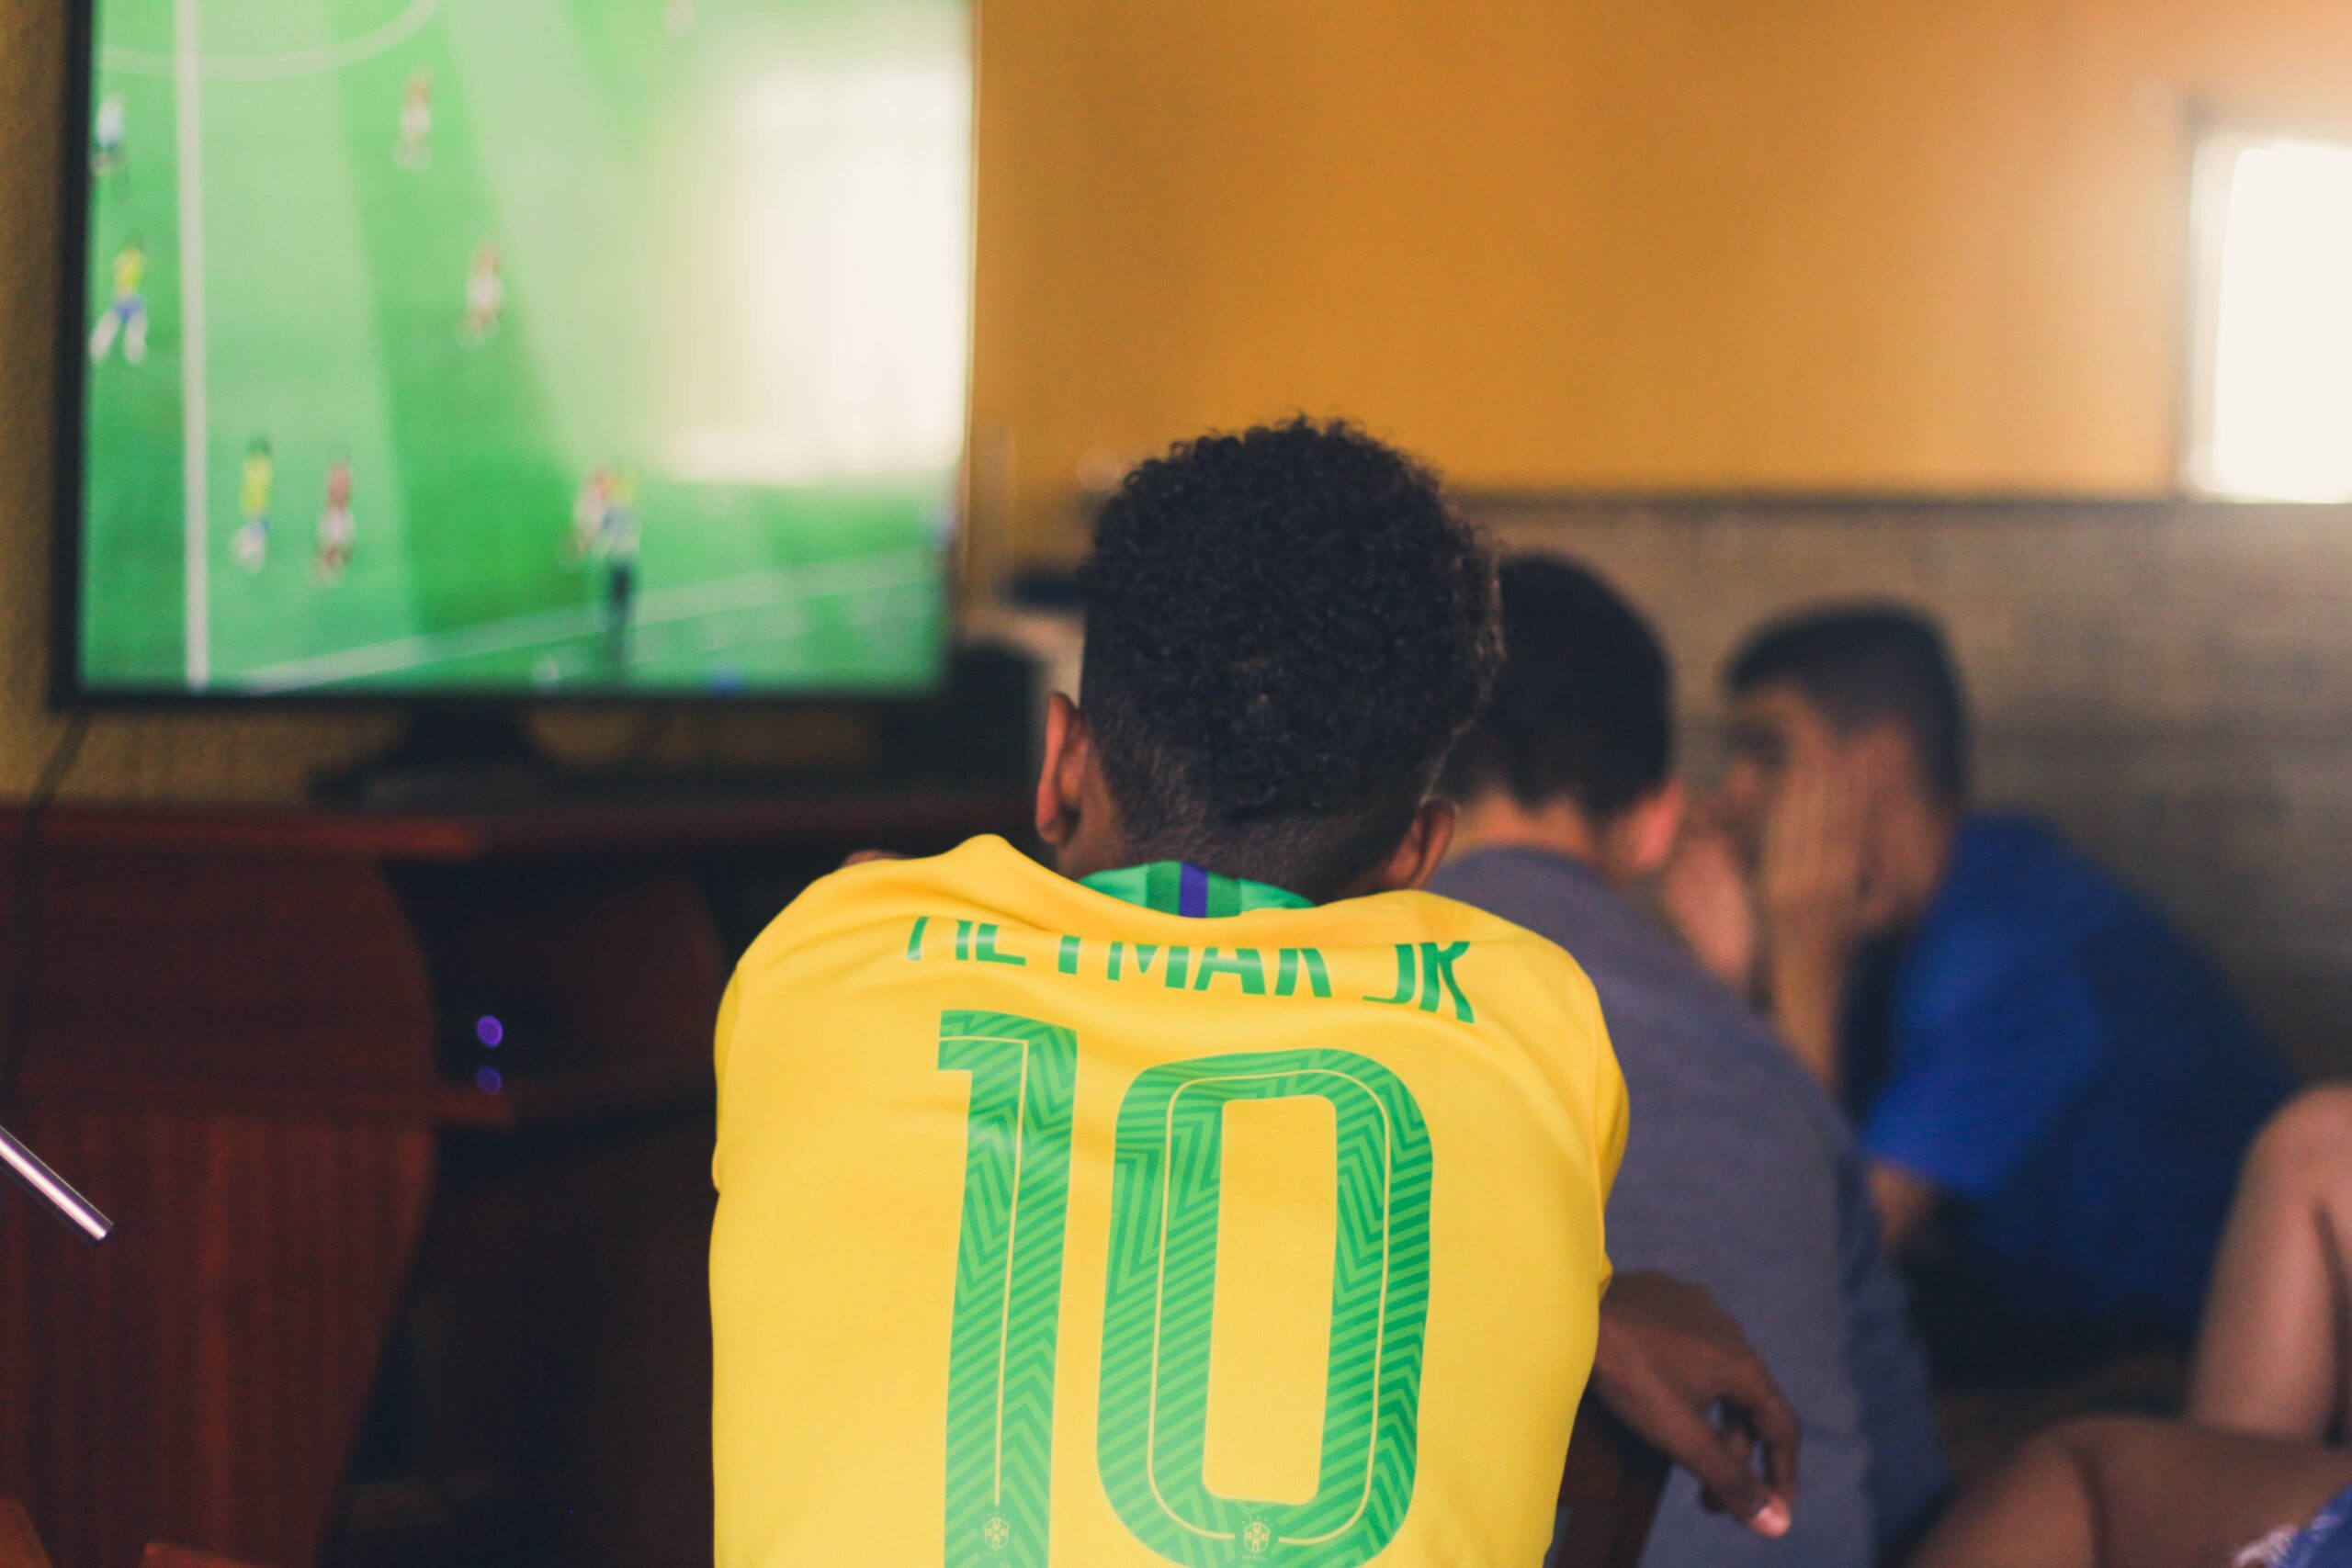 Com o gol marcado contra a Croácia, Neymar igualou Pelé e é o maior artilheiro da Seleção Brasileira. Veja quantos gols ele tem pelo Brasil.